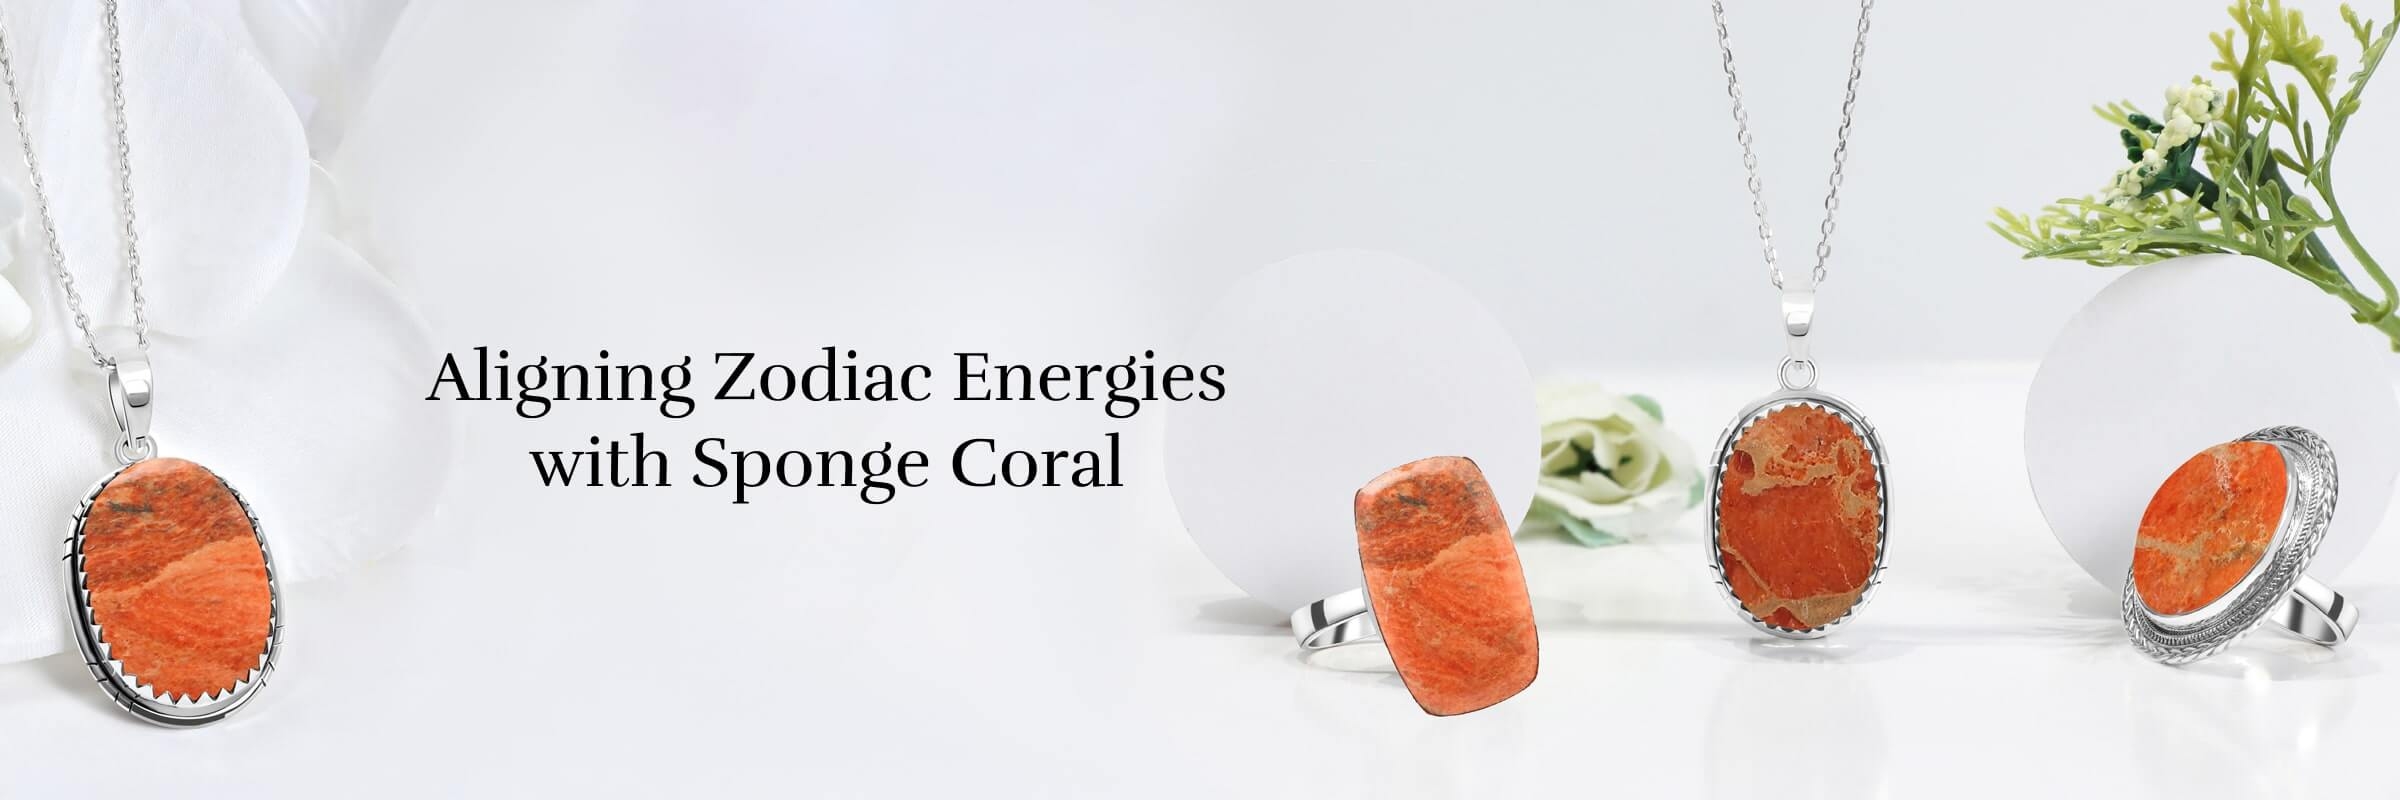 Sponge Coral: Zodiac sign